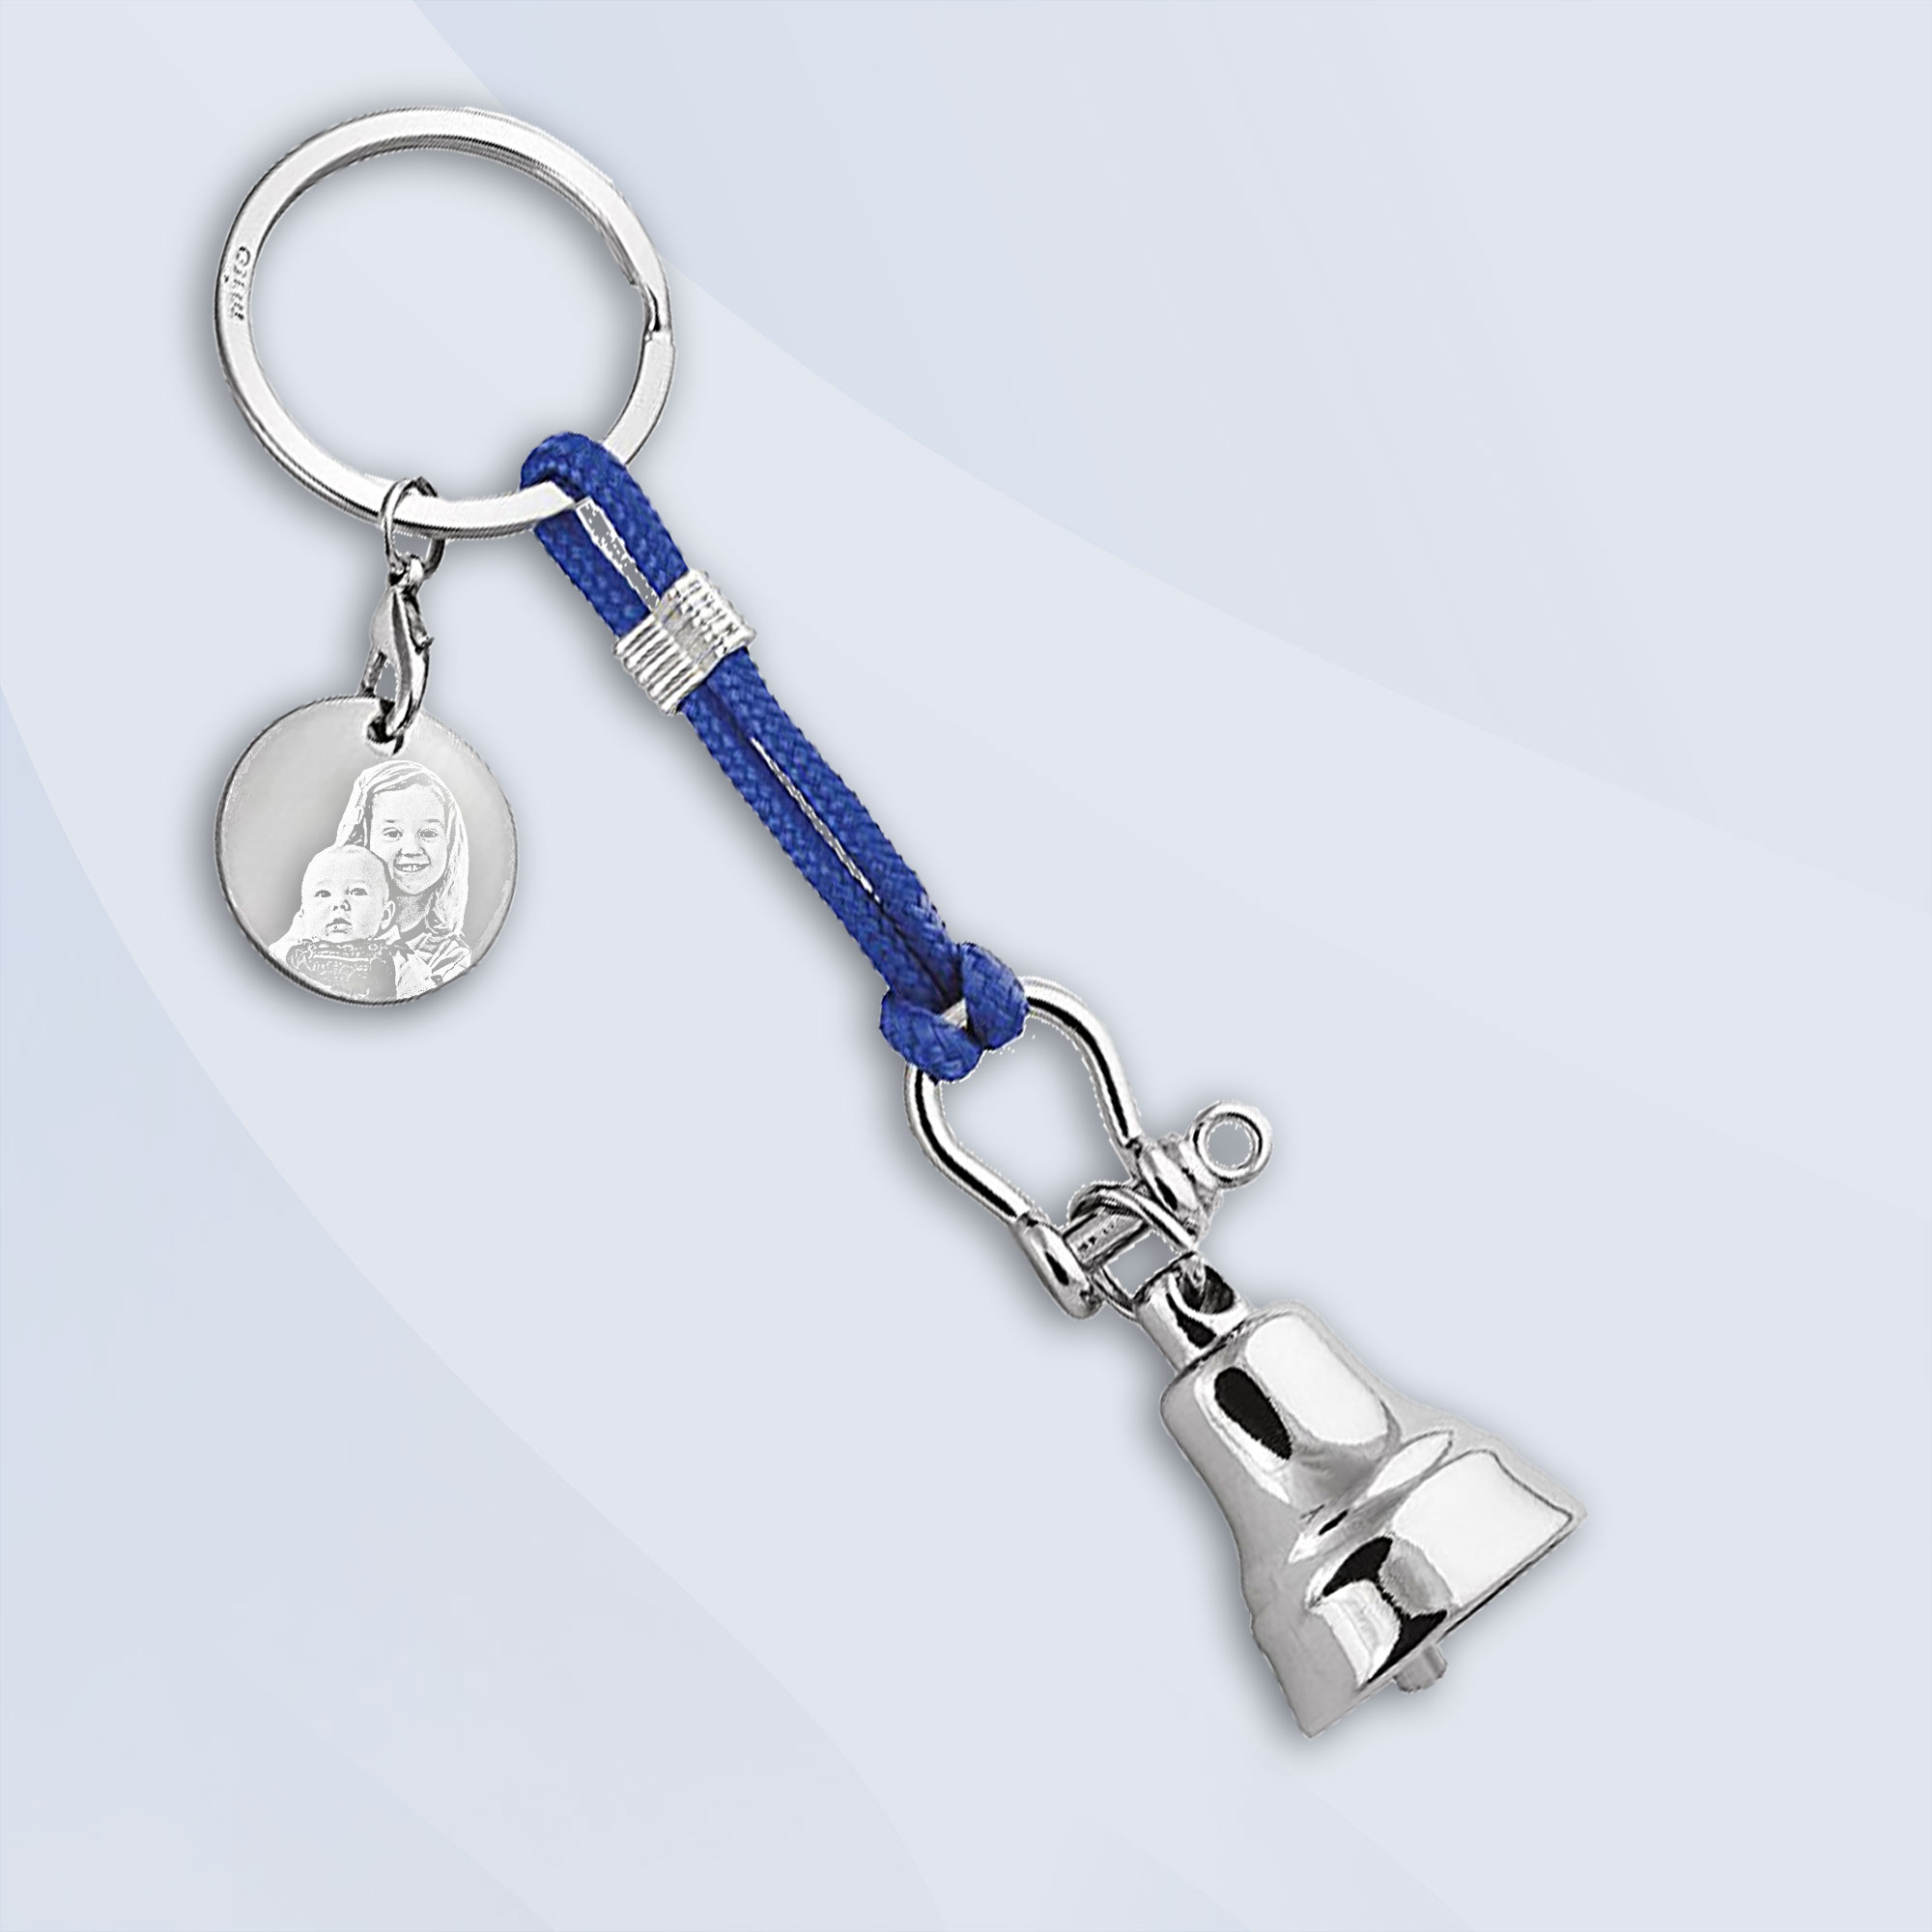 Schlüsselanhänger mit Glocke im maritimen Design